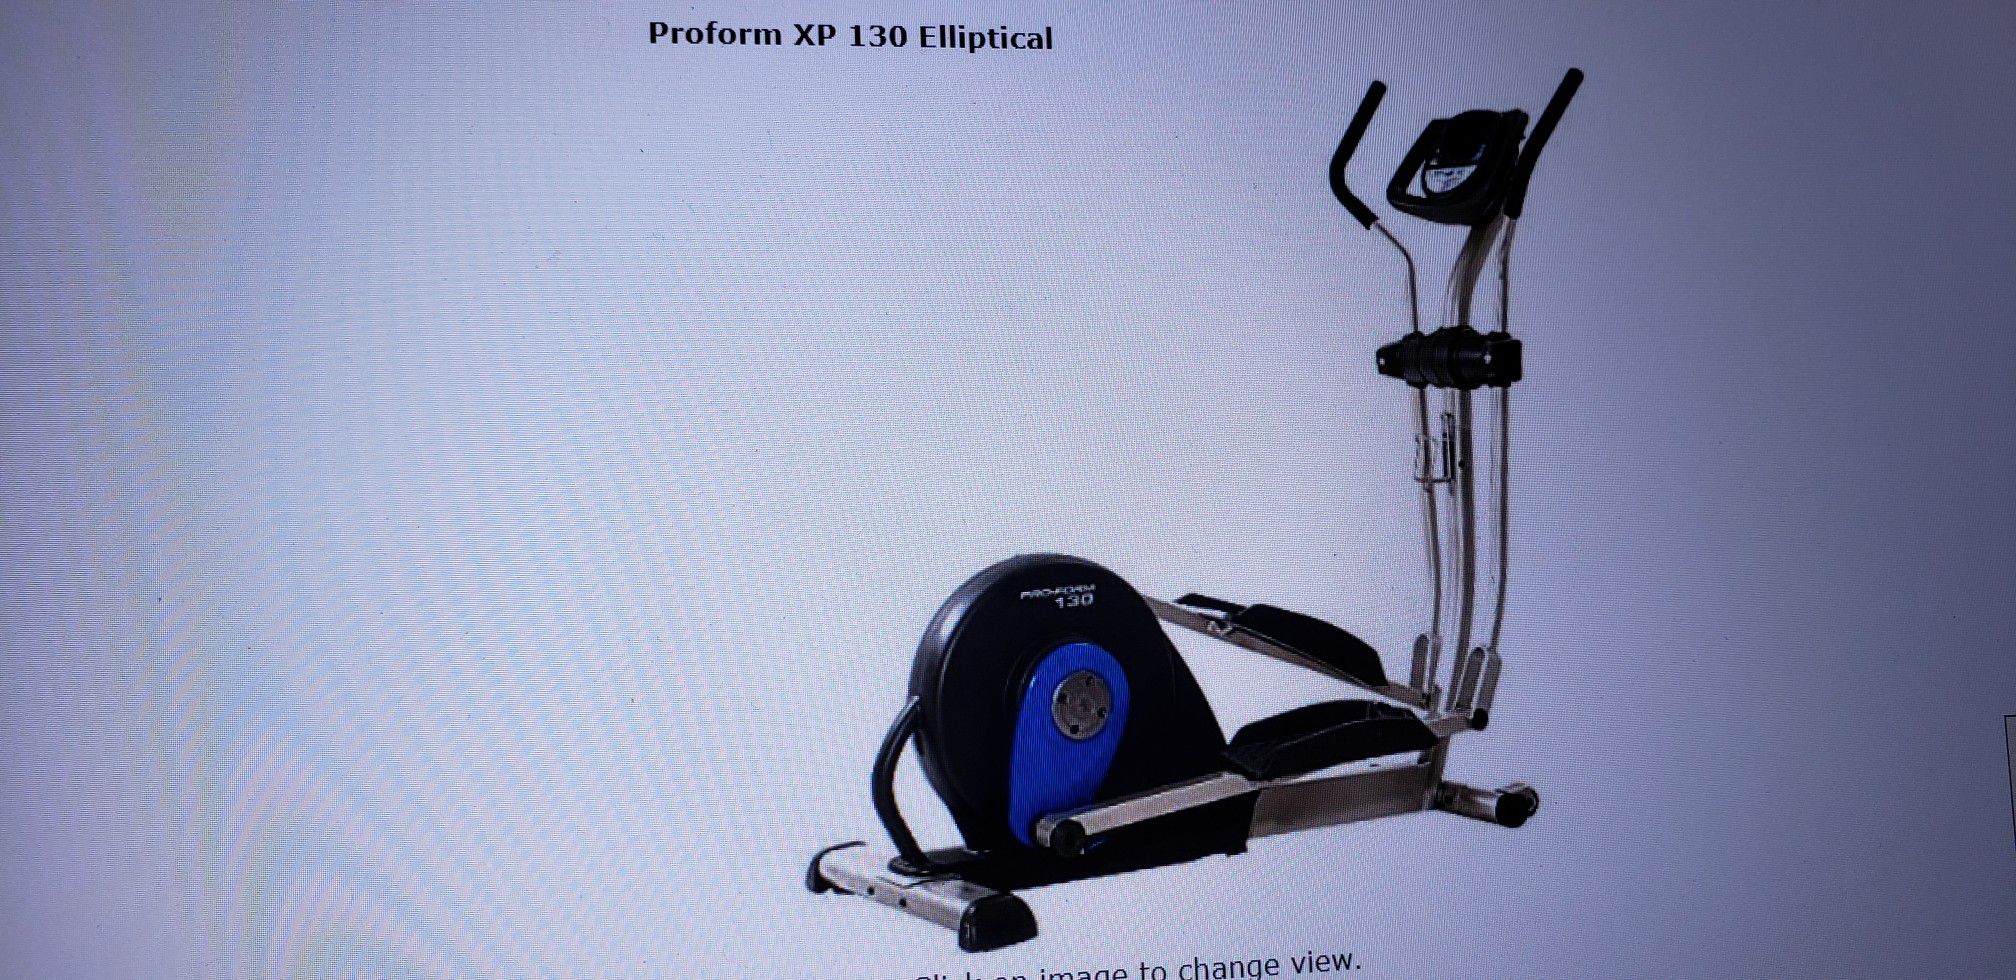 Pro Form Elliptical Exercise Machine